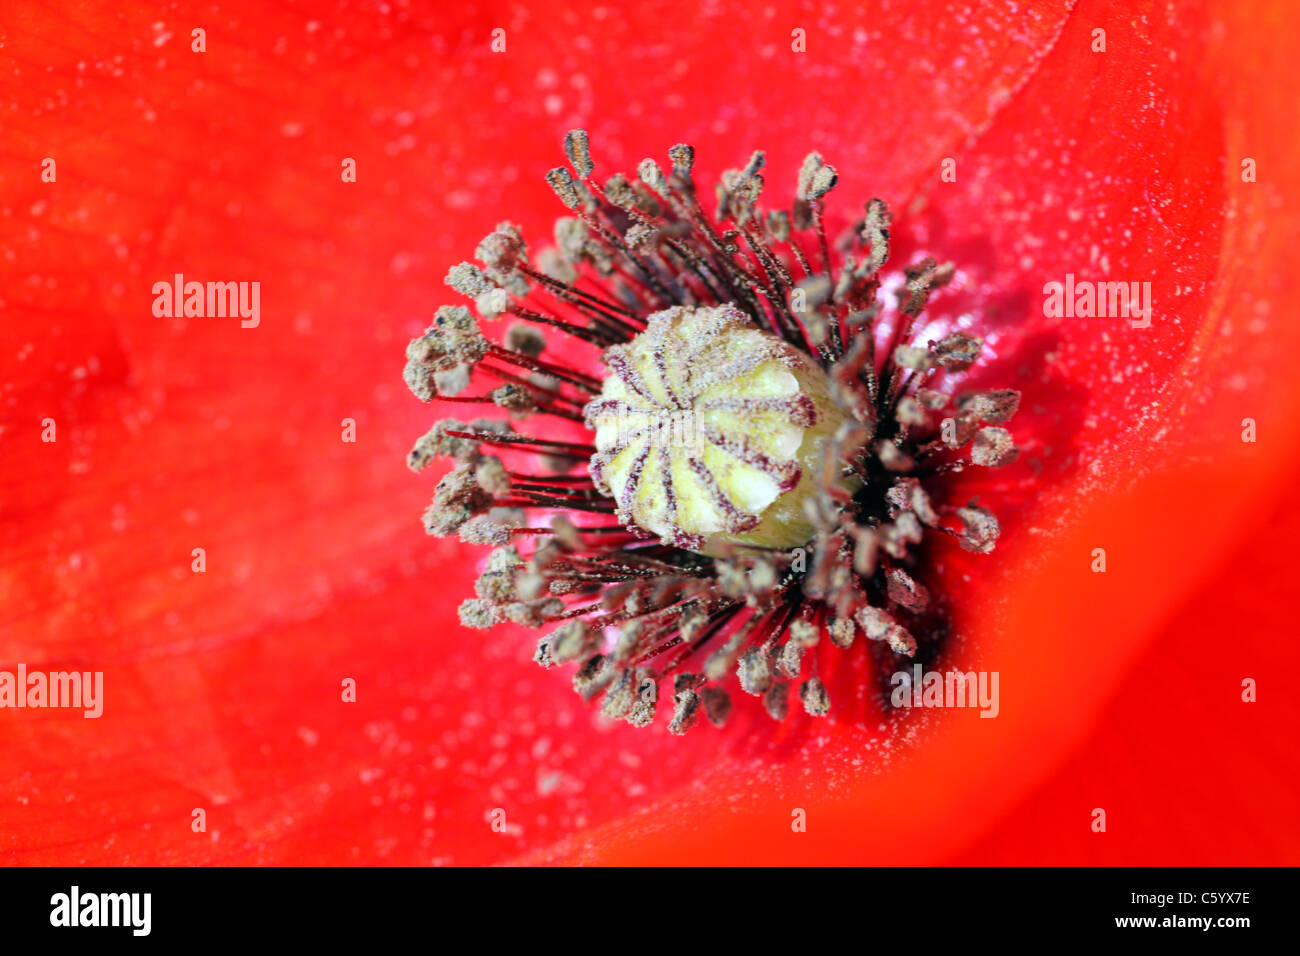 Common poppy flower Stock Photo